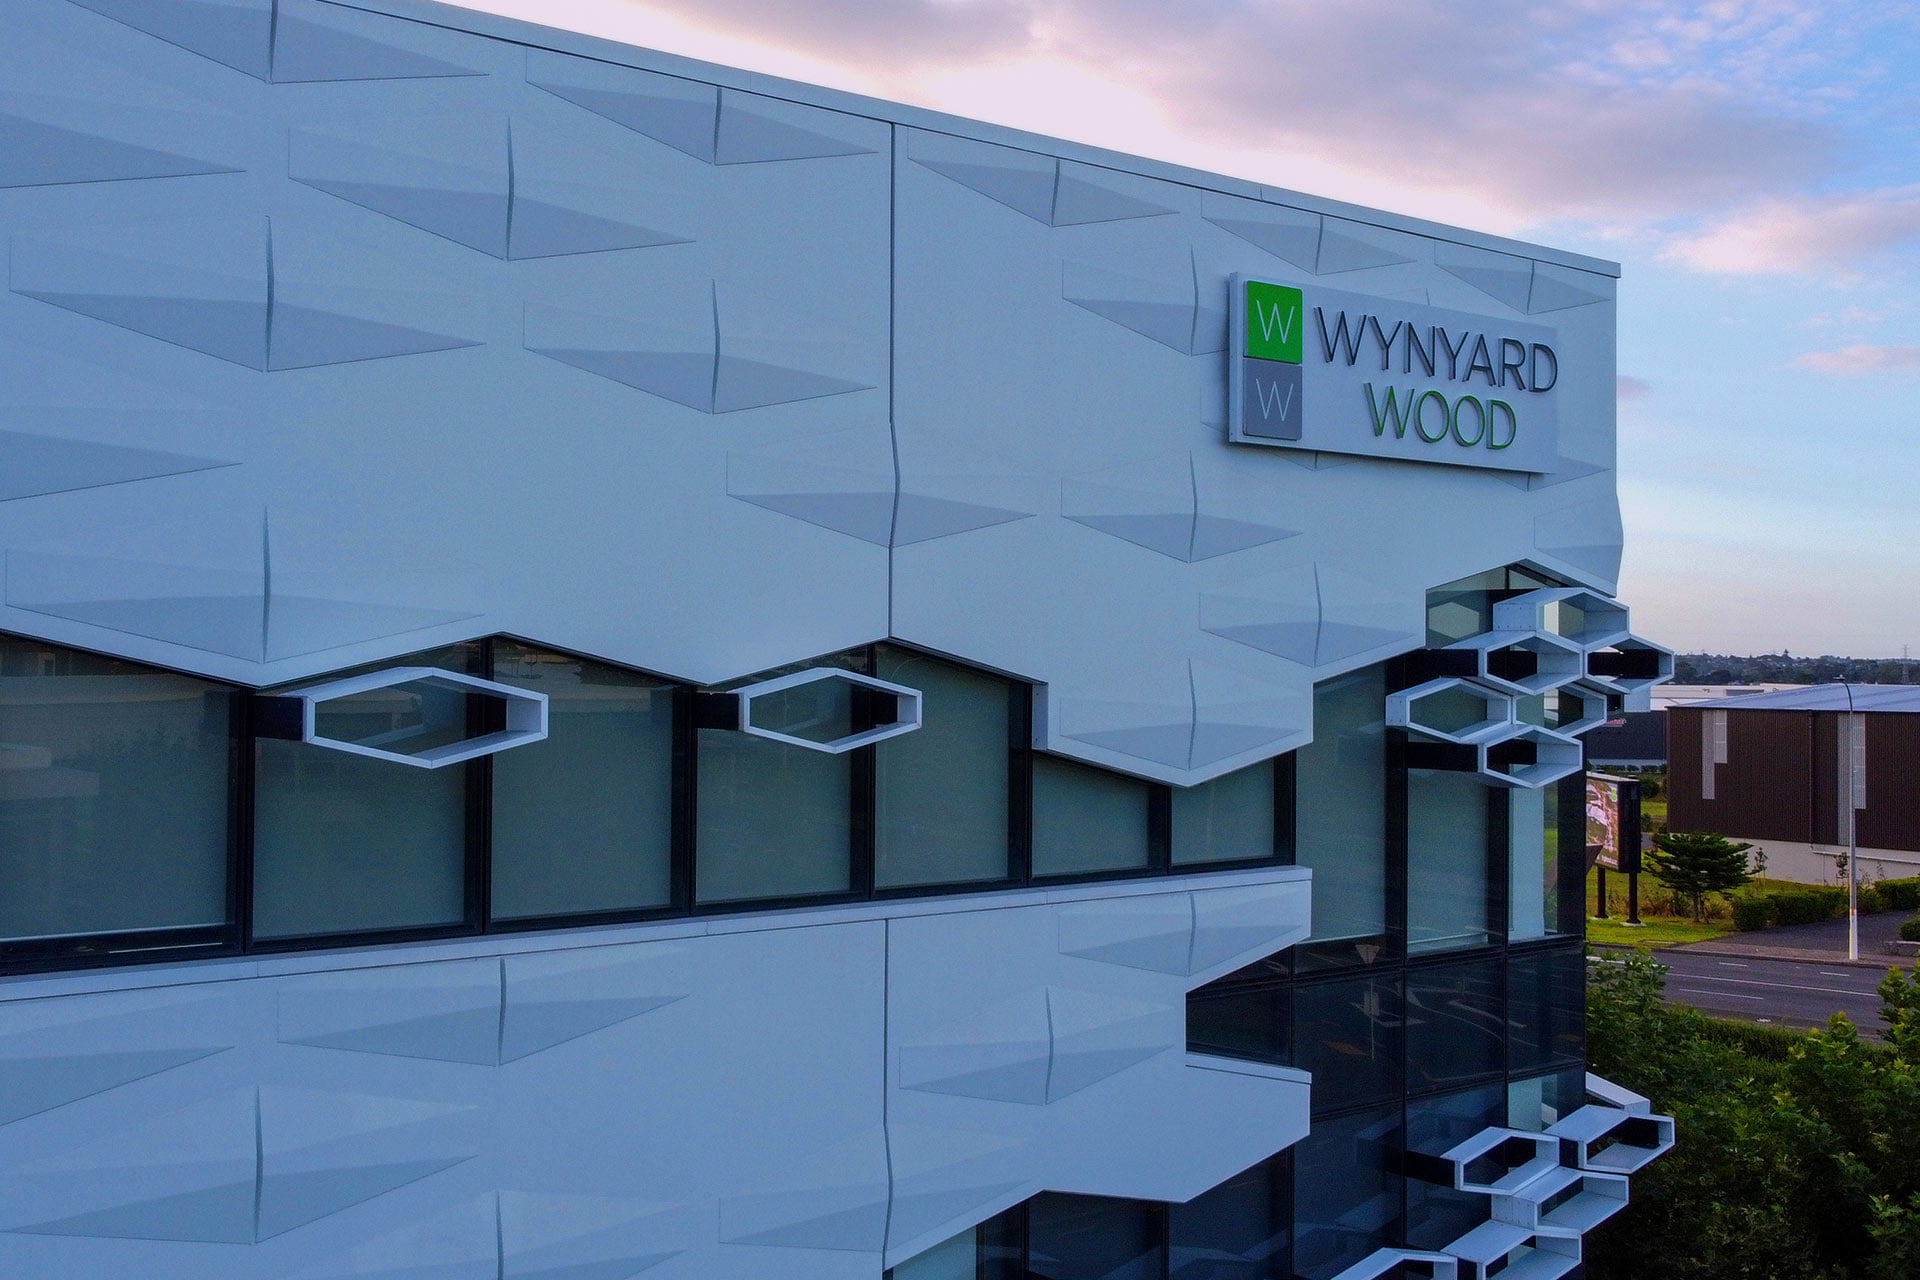 A full design agency service for Wynyard Wood